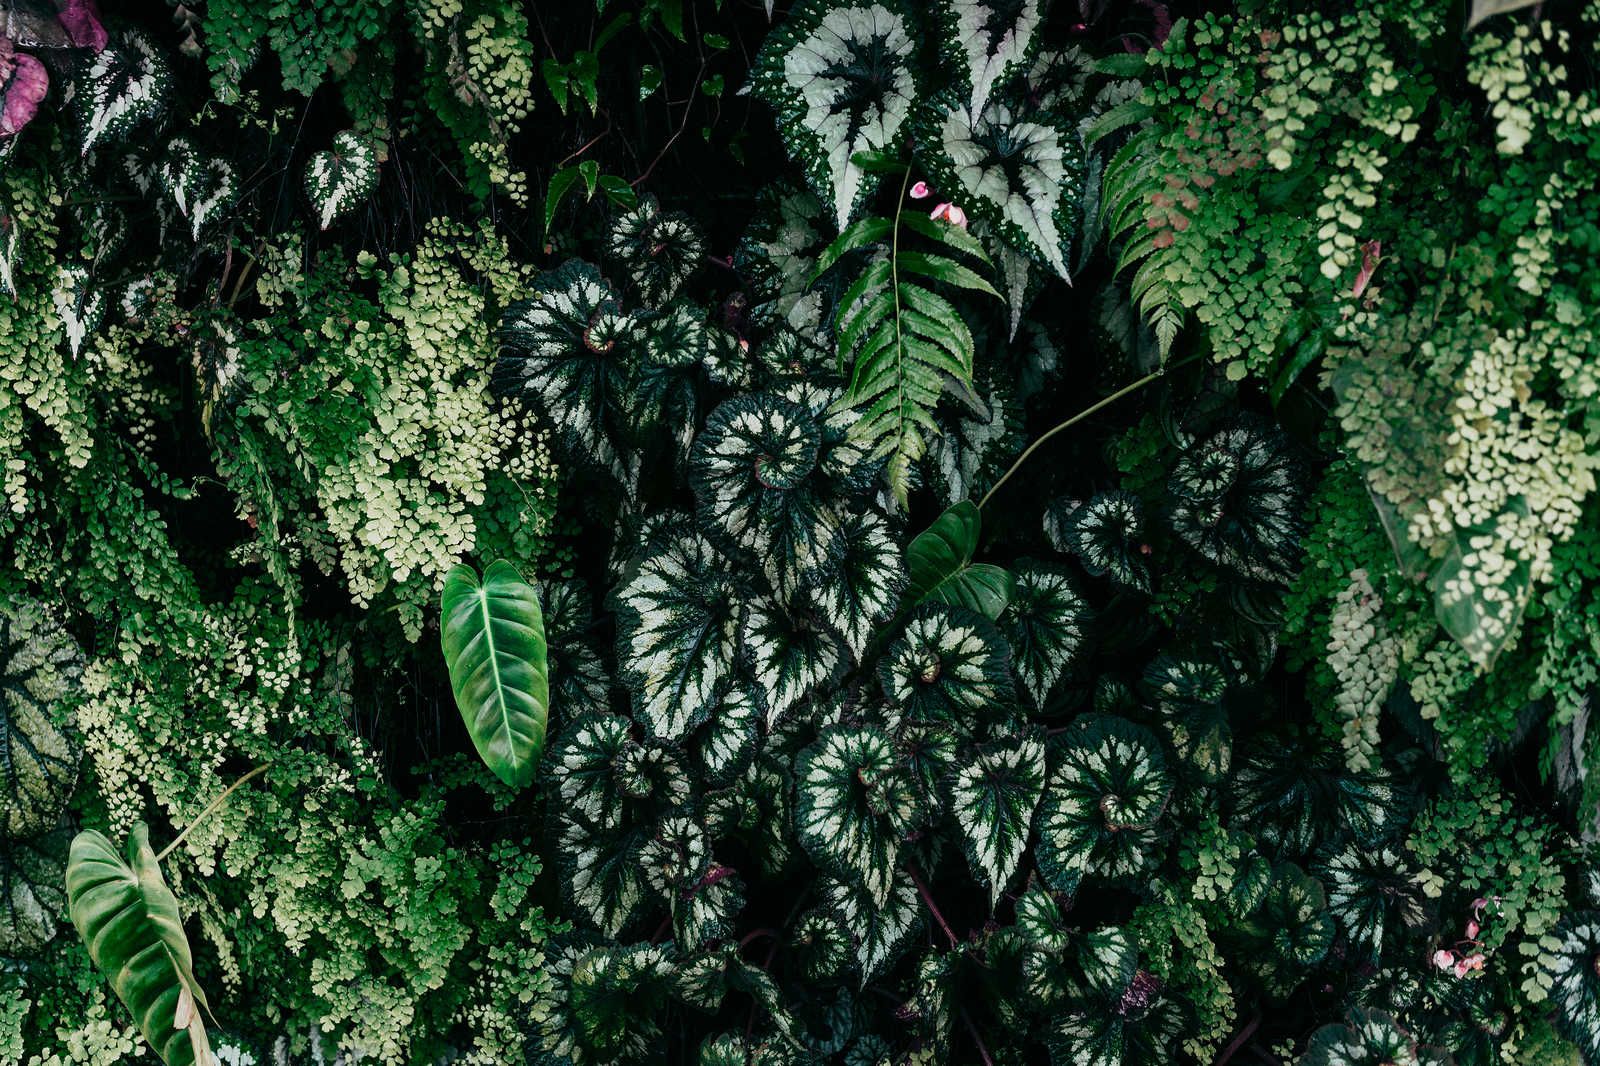             Deep Green 2 - Leinwandbild Blätterdickicht, Farne & Hängepflanzen – 0,90 m x 0,60 m
        